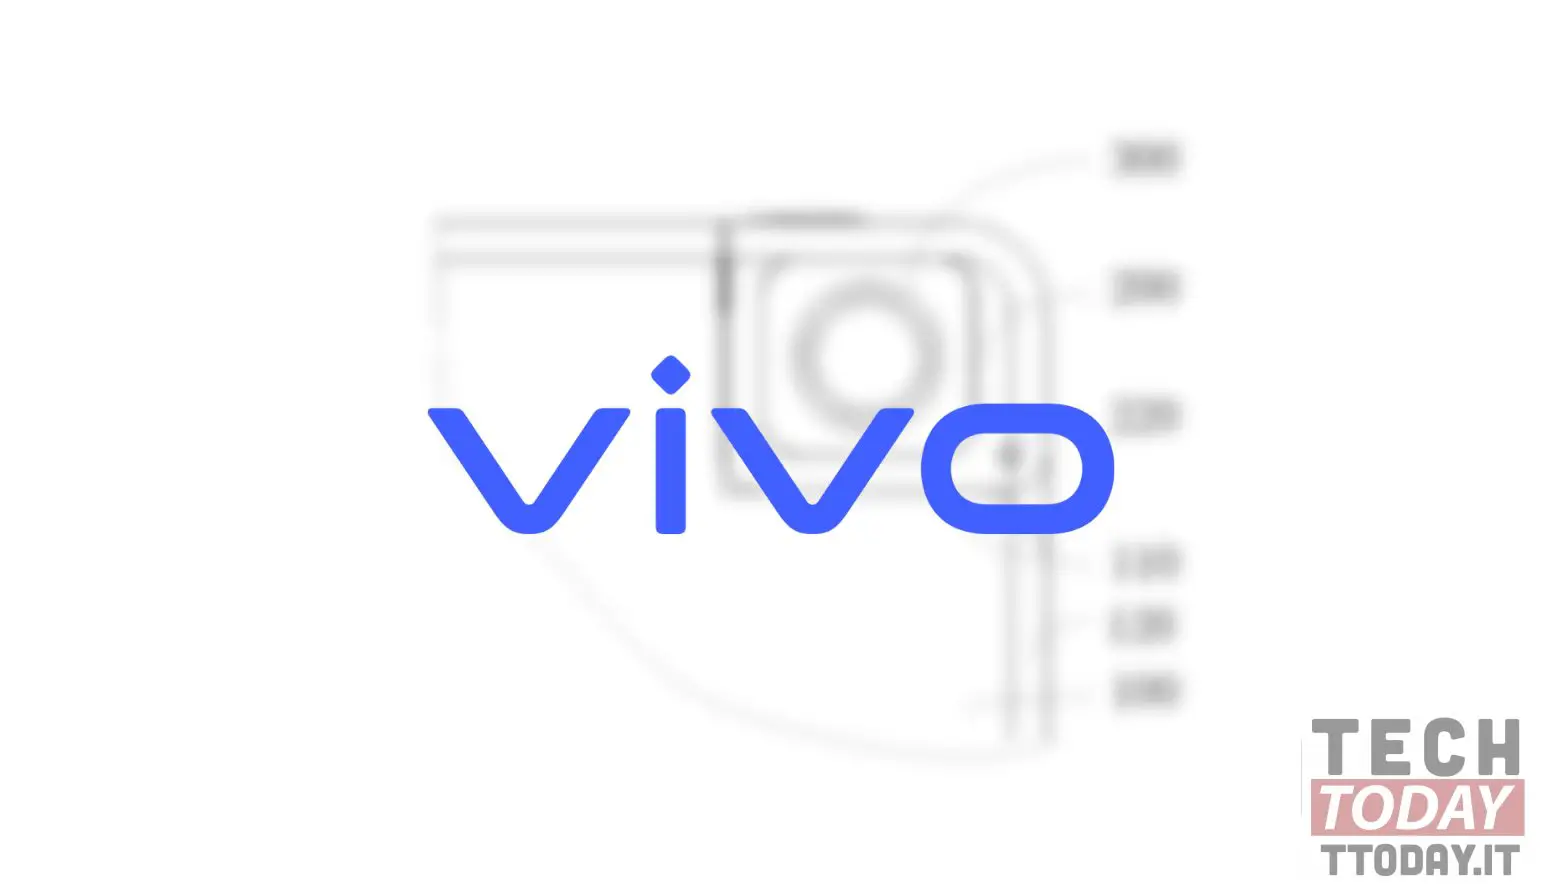 vivo 想到了一款带有可拆卸自拍相机的智能手机